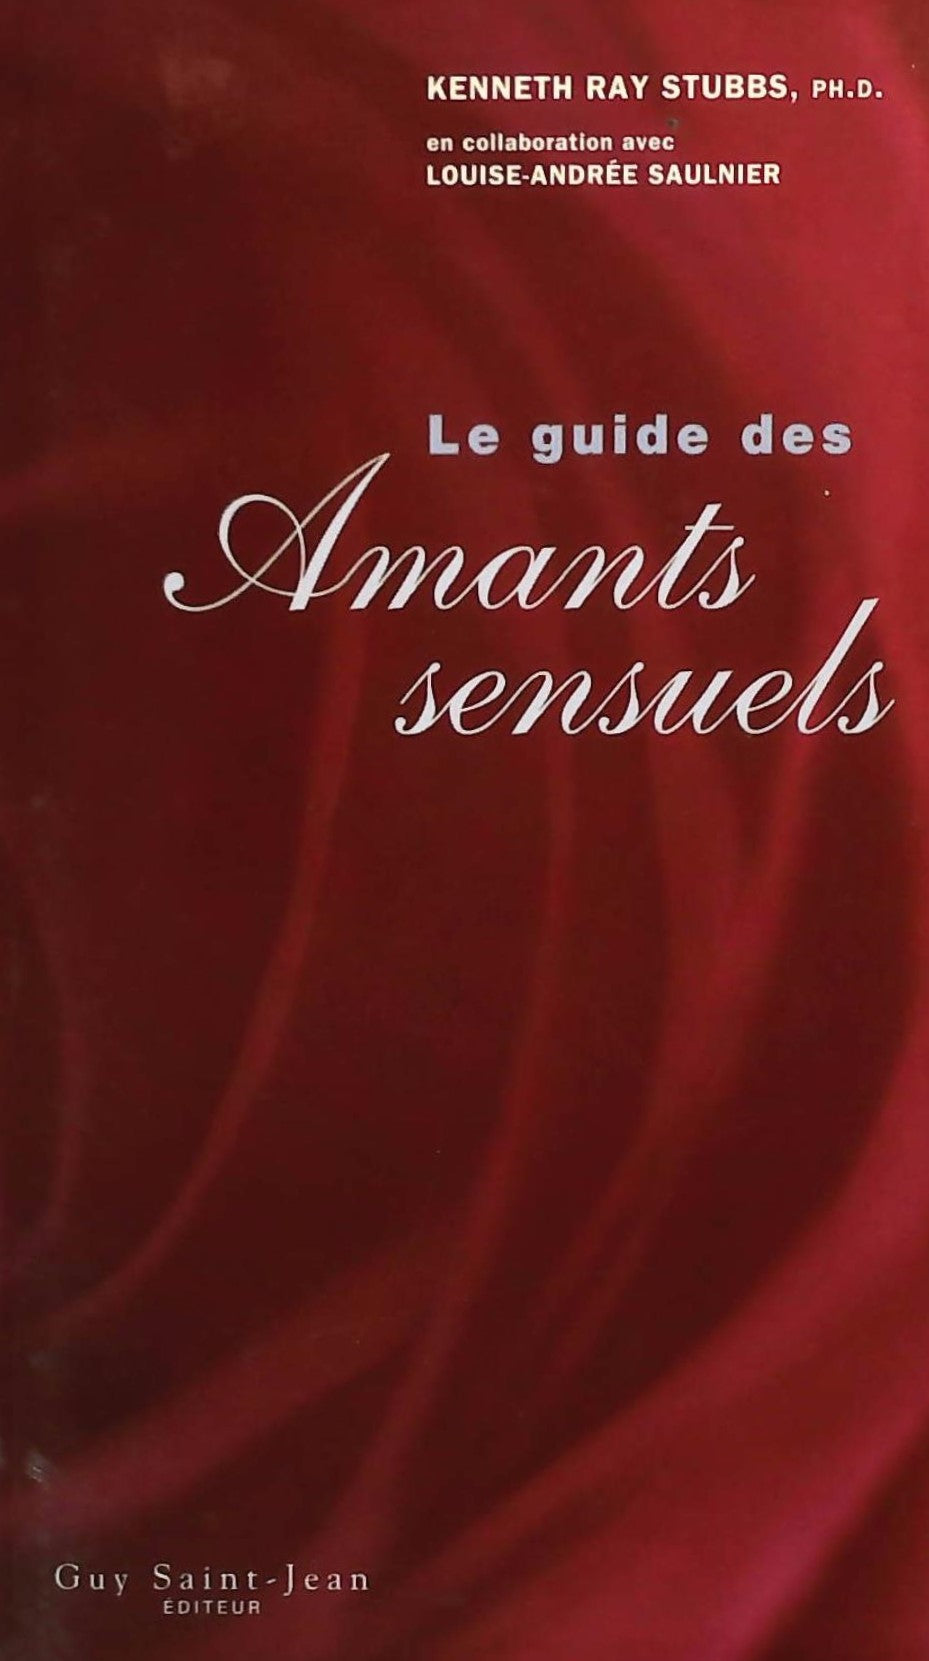 Livre ISBN 2894550871 Le guide des amants sansuels (Kenneth Ray Stubbs)